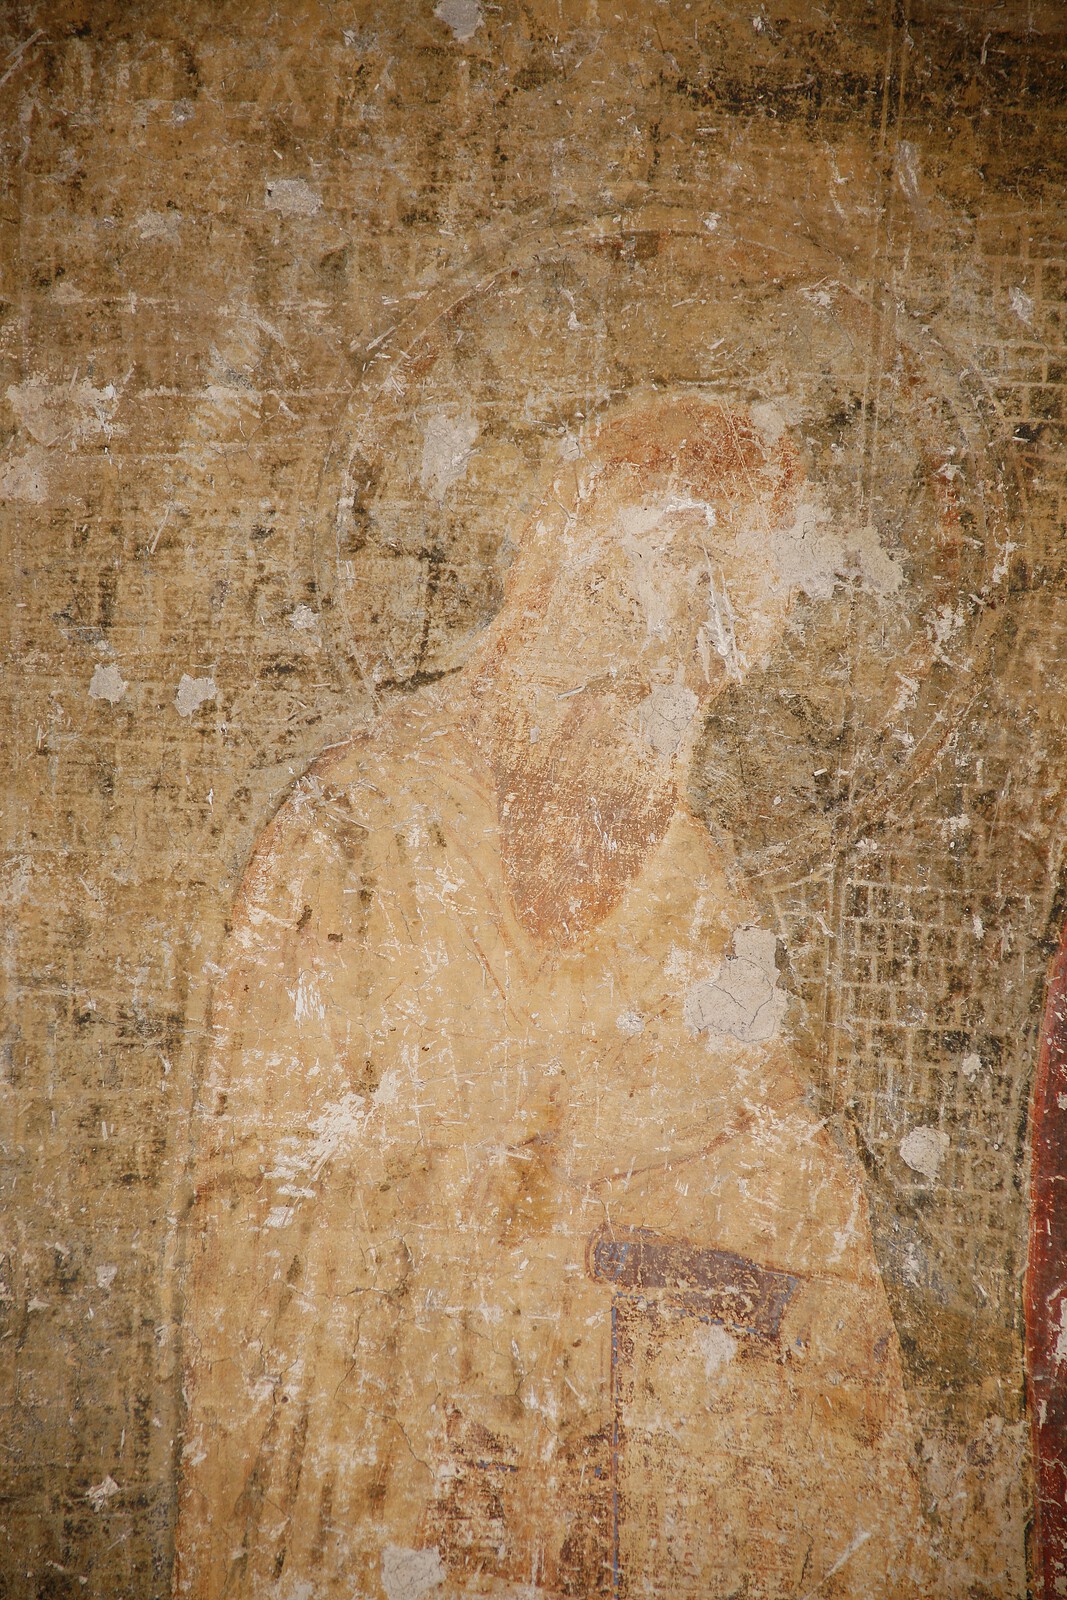 Abbot of Mileseva, detail